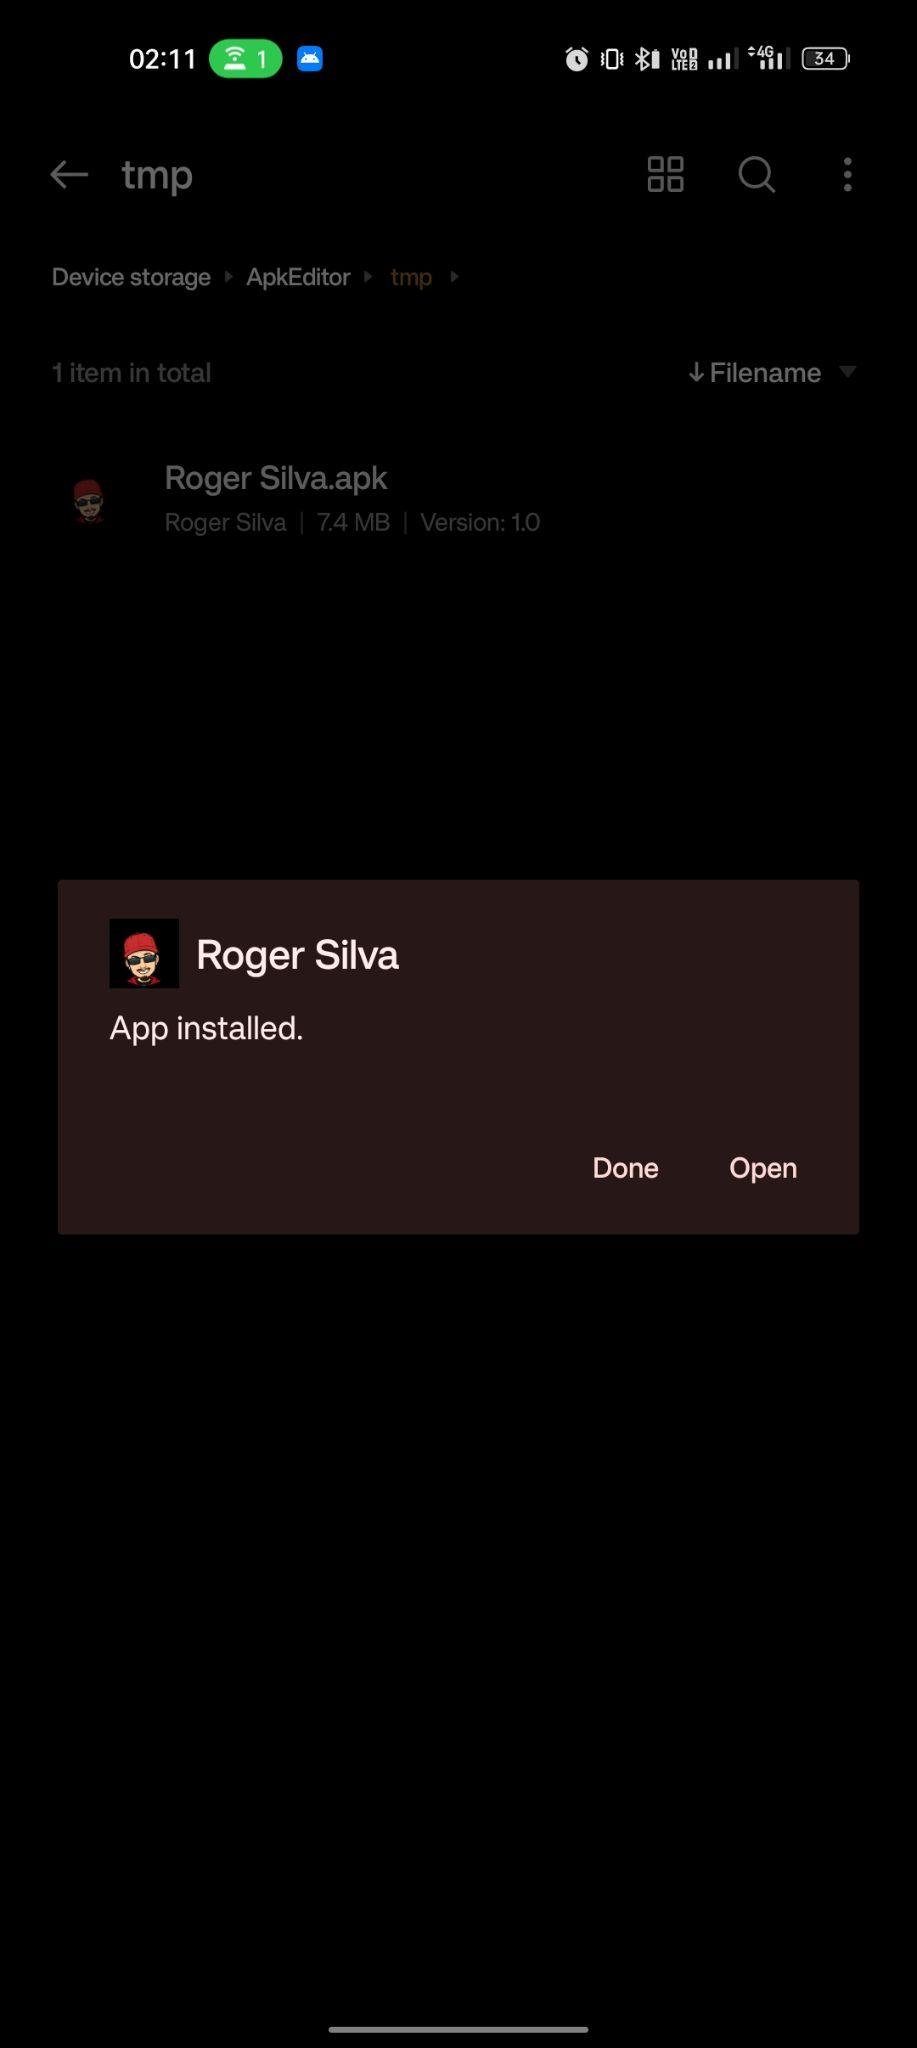 Roger Silva apk installed